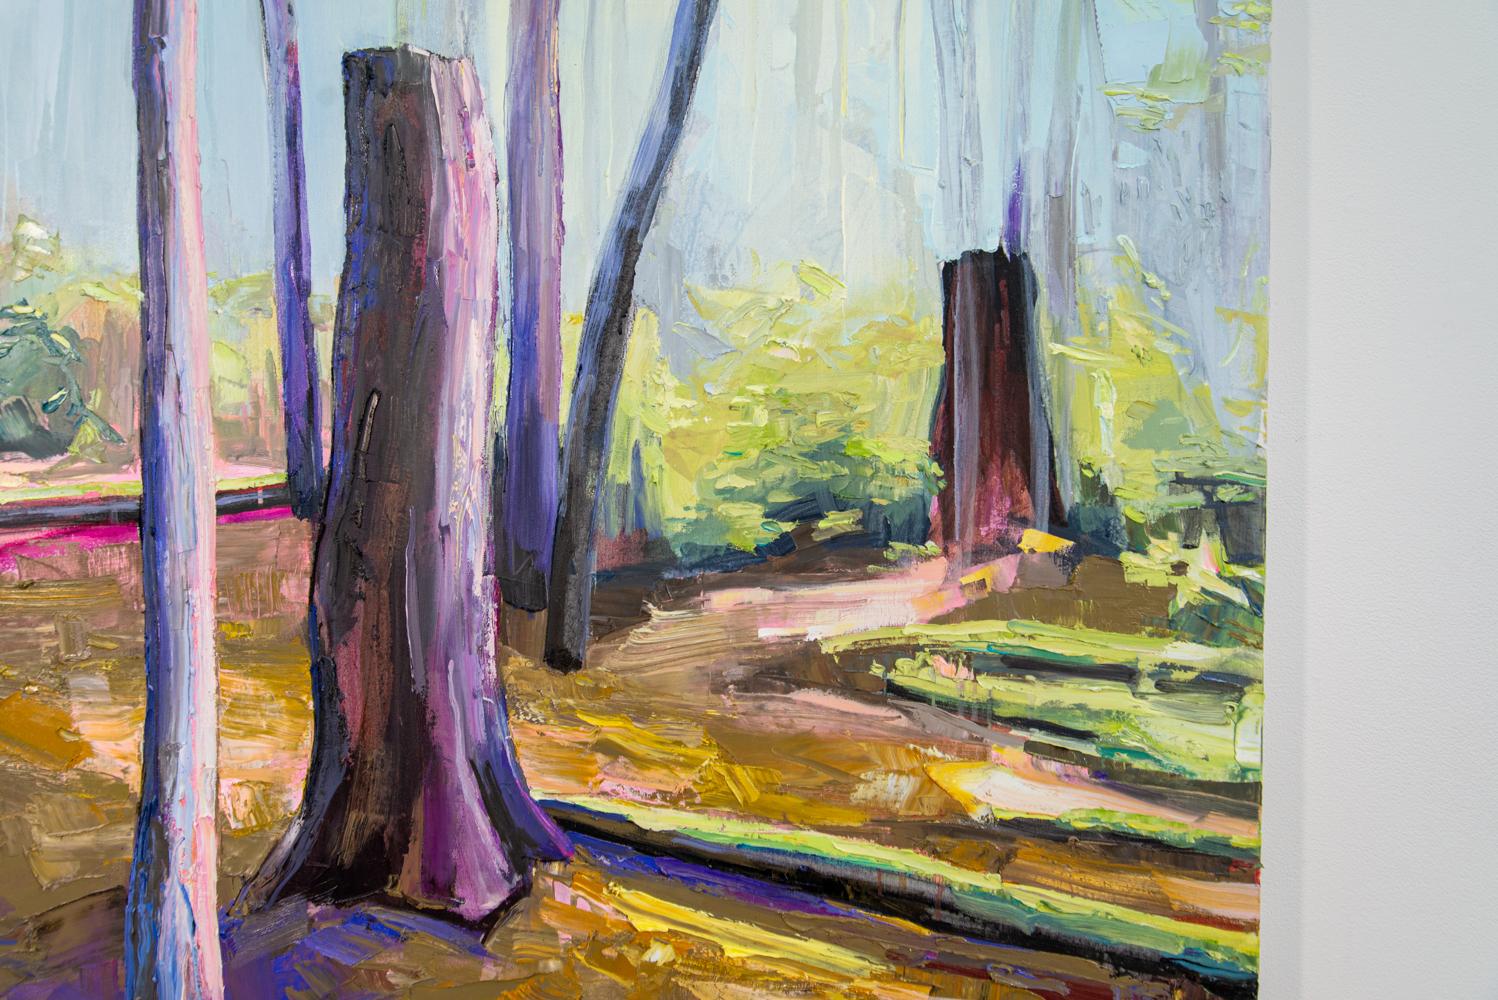 Dieses traumhafte Waldporträt der Torontoer Künstlerin Julie Himel ist in hübschen Rosa-, Violett-, Gelb- und Grüntönen gehalten. Himel, eine engagierte Umweltschützerin, ist bekannt für ihren erfinderischen Umgang mit Farben. Diese Arbeit in